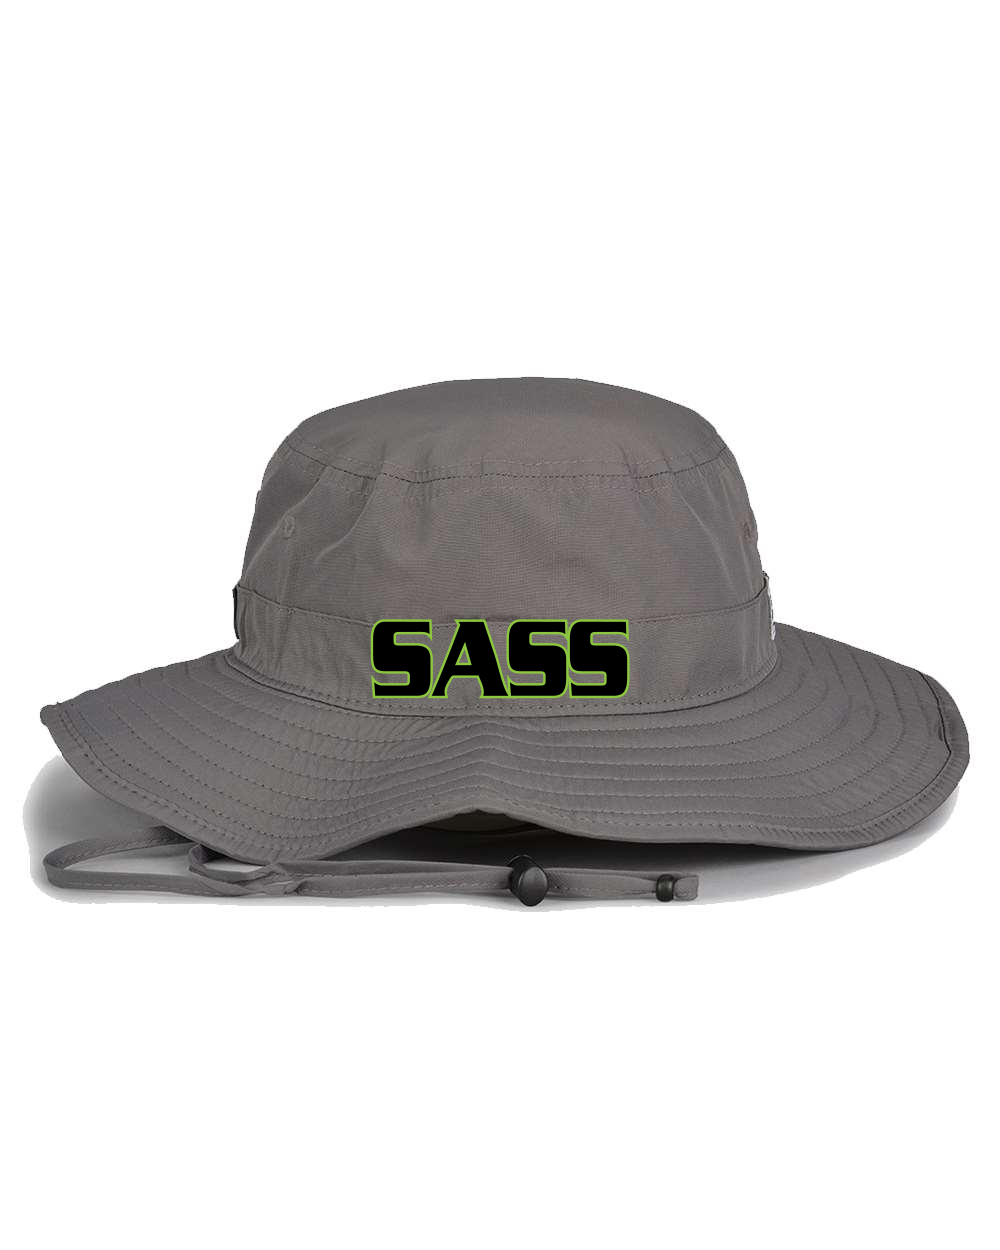 Sass Boonie Hat